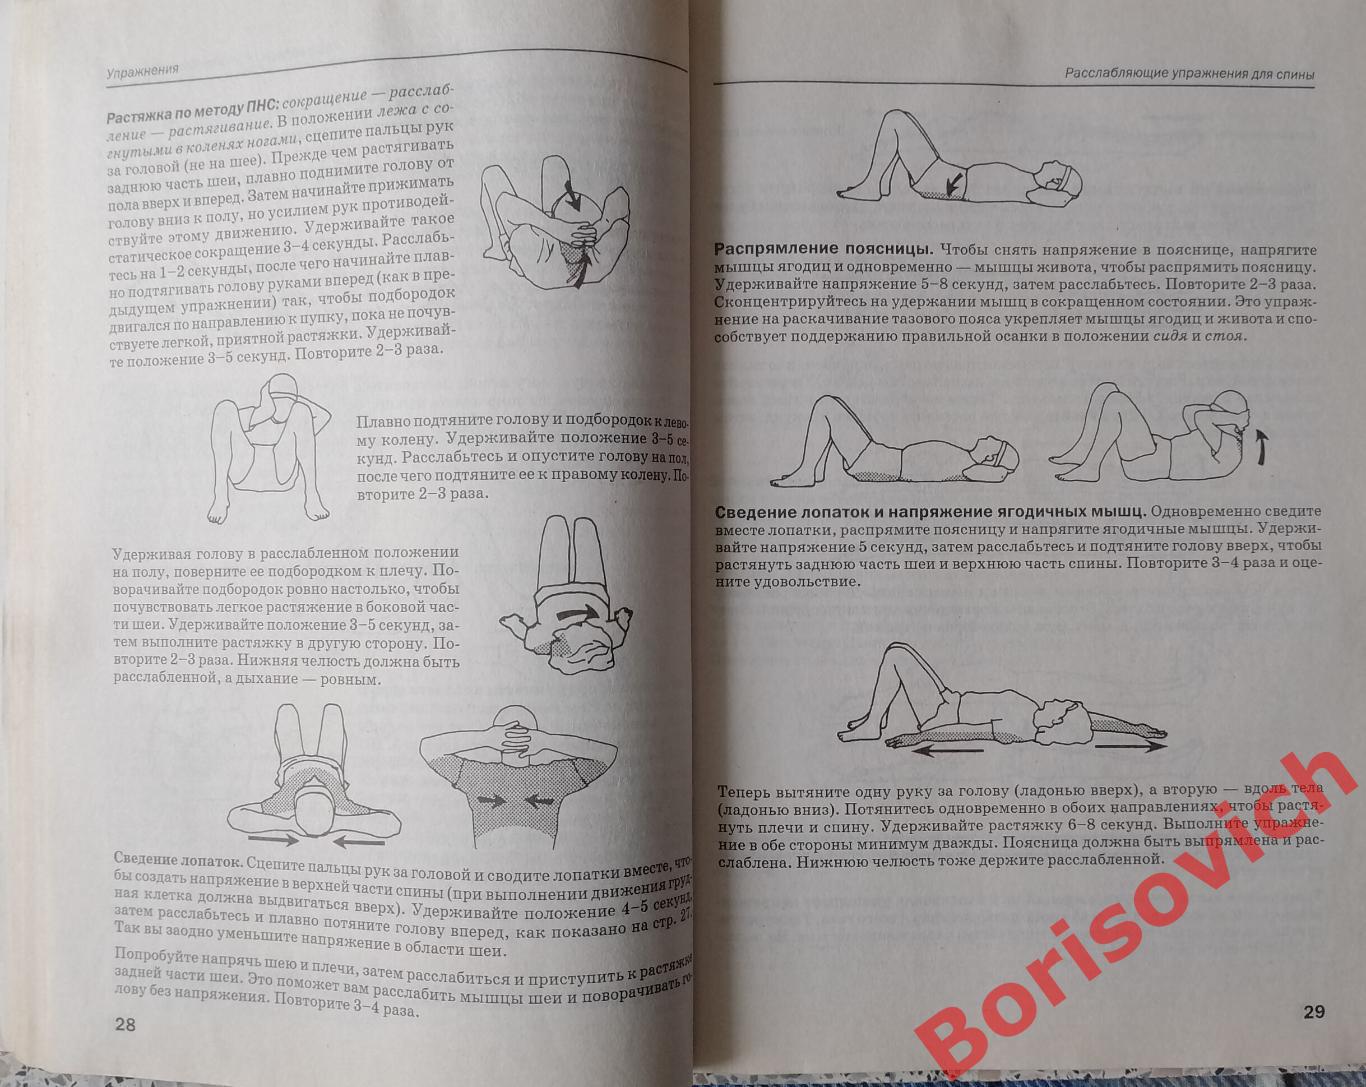 РАСТЯЖКА для поддержания гибкости мышц и суставов Минск 2009 Тираж 6000 экз 4